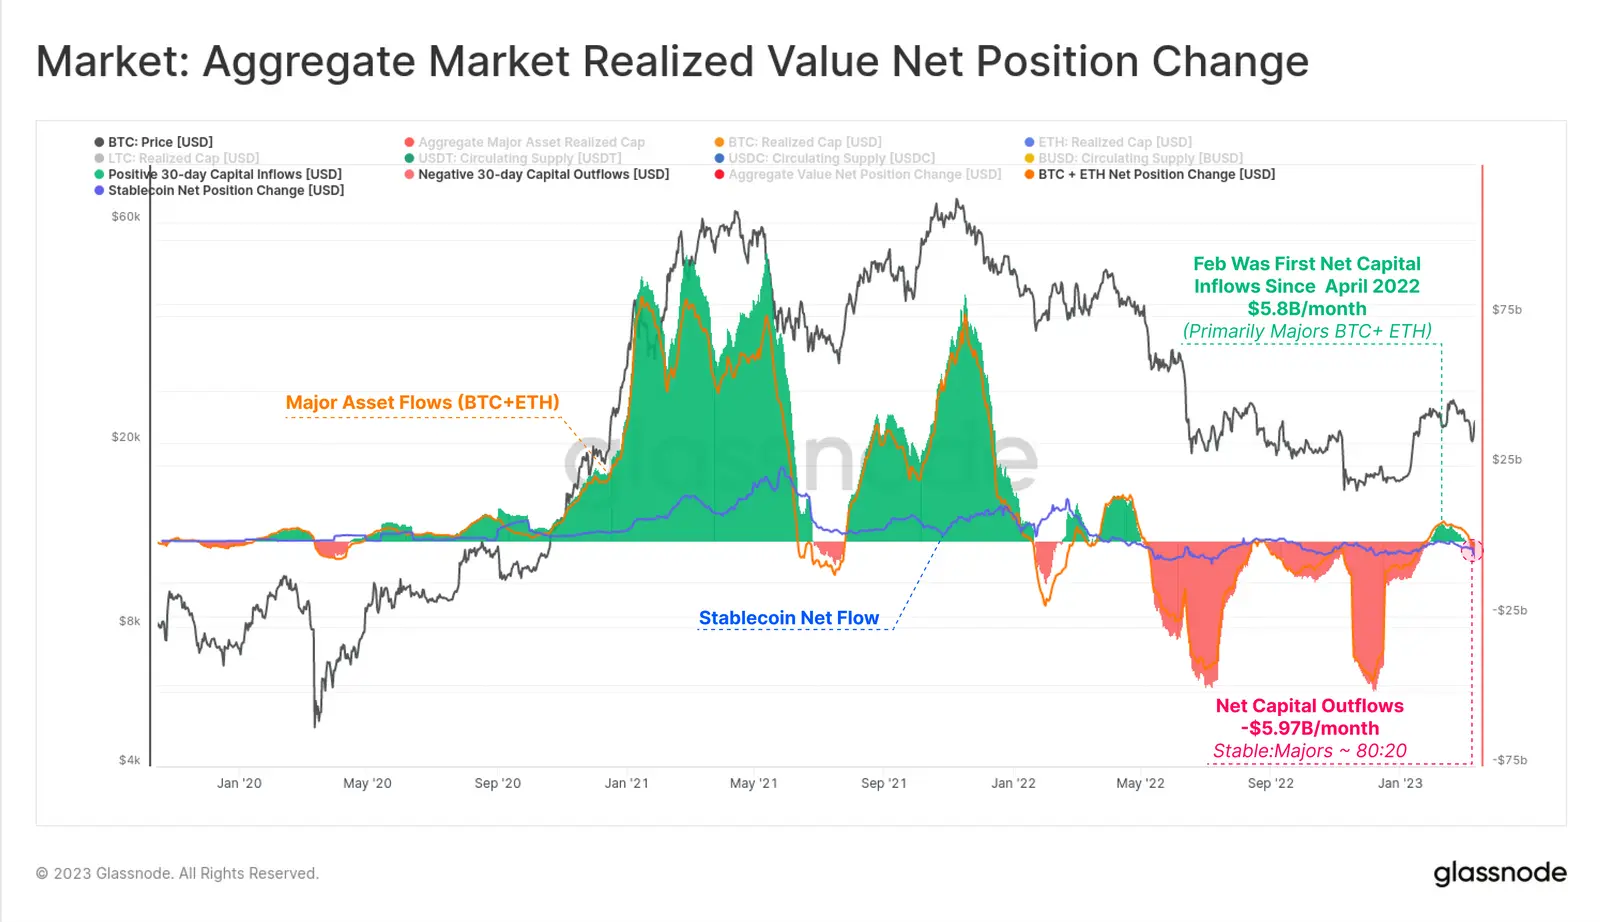 Aggregate Market Realized Value Net Position Change, Quelle: Glassnode